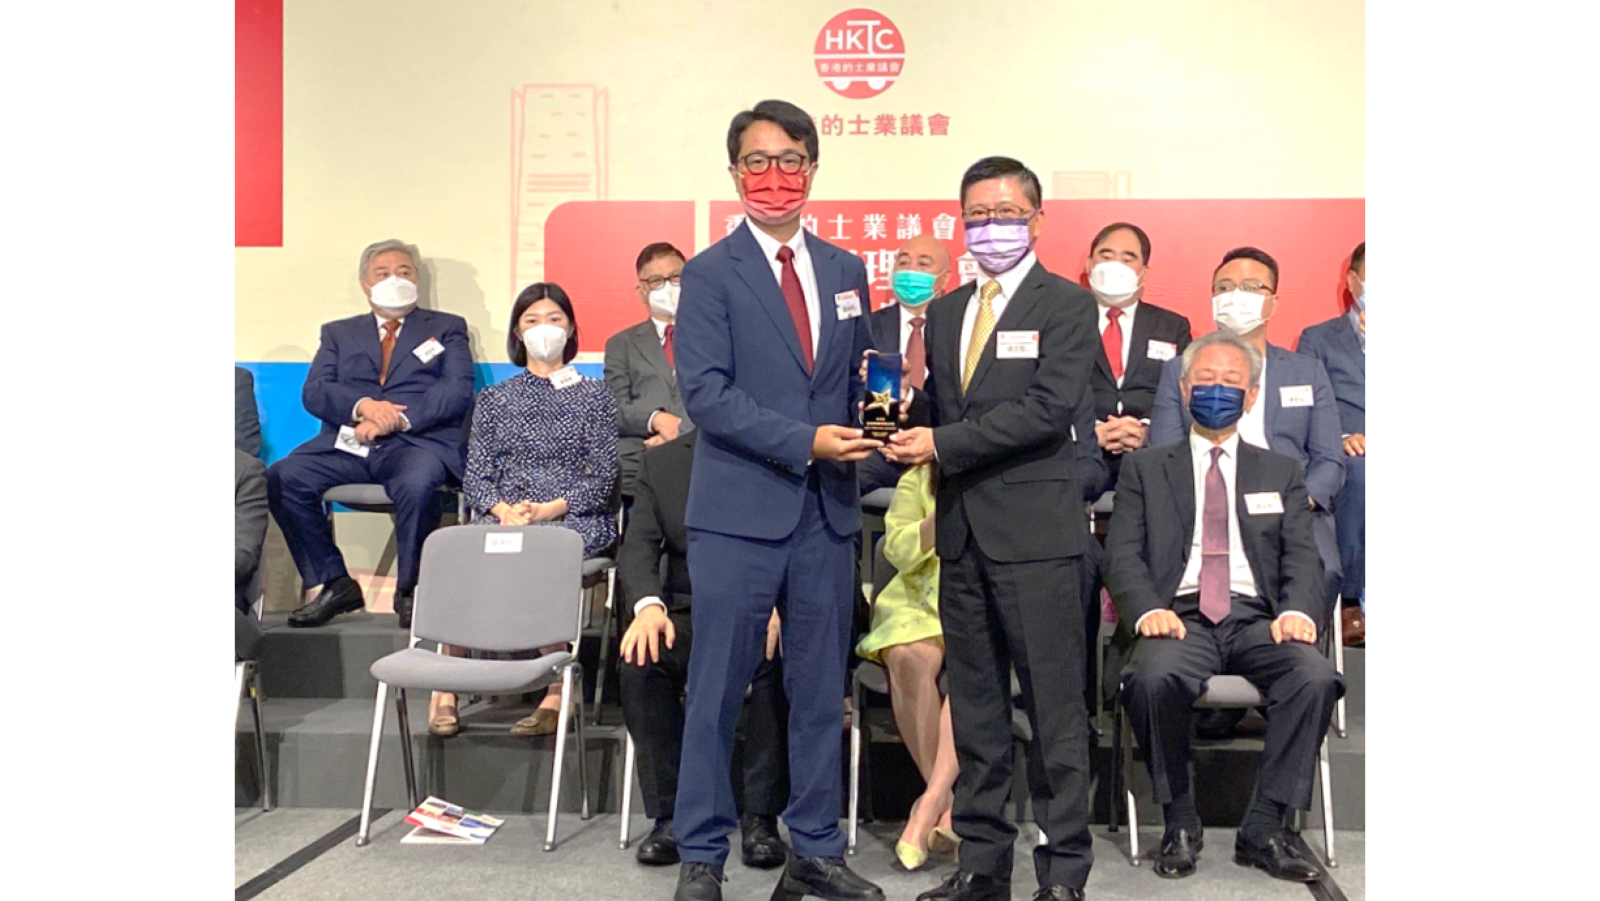 富通保險榮獲香港的士業議會頒發感謝獎座